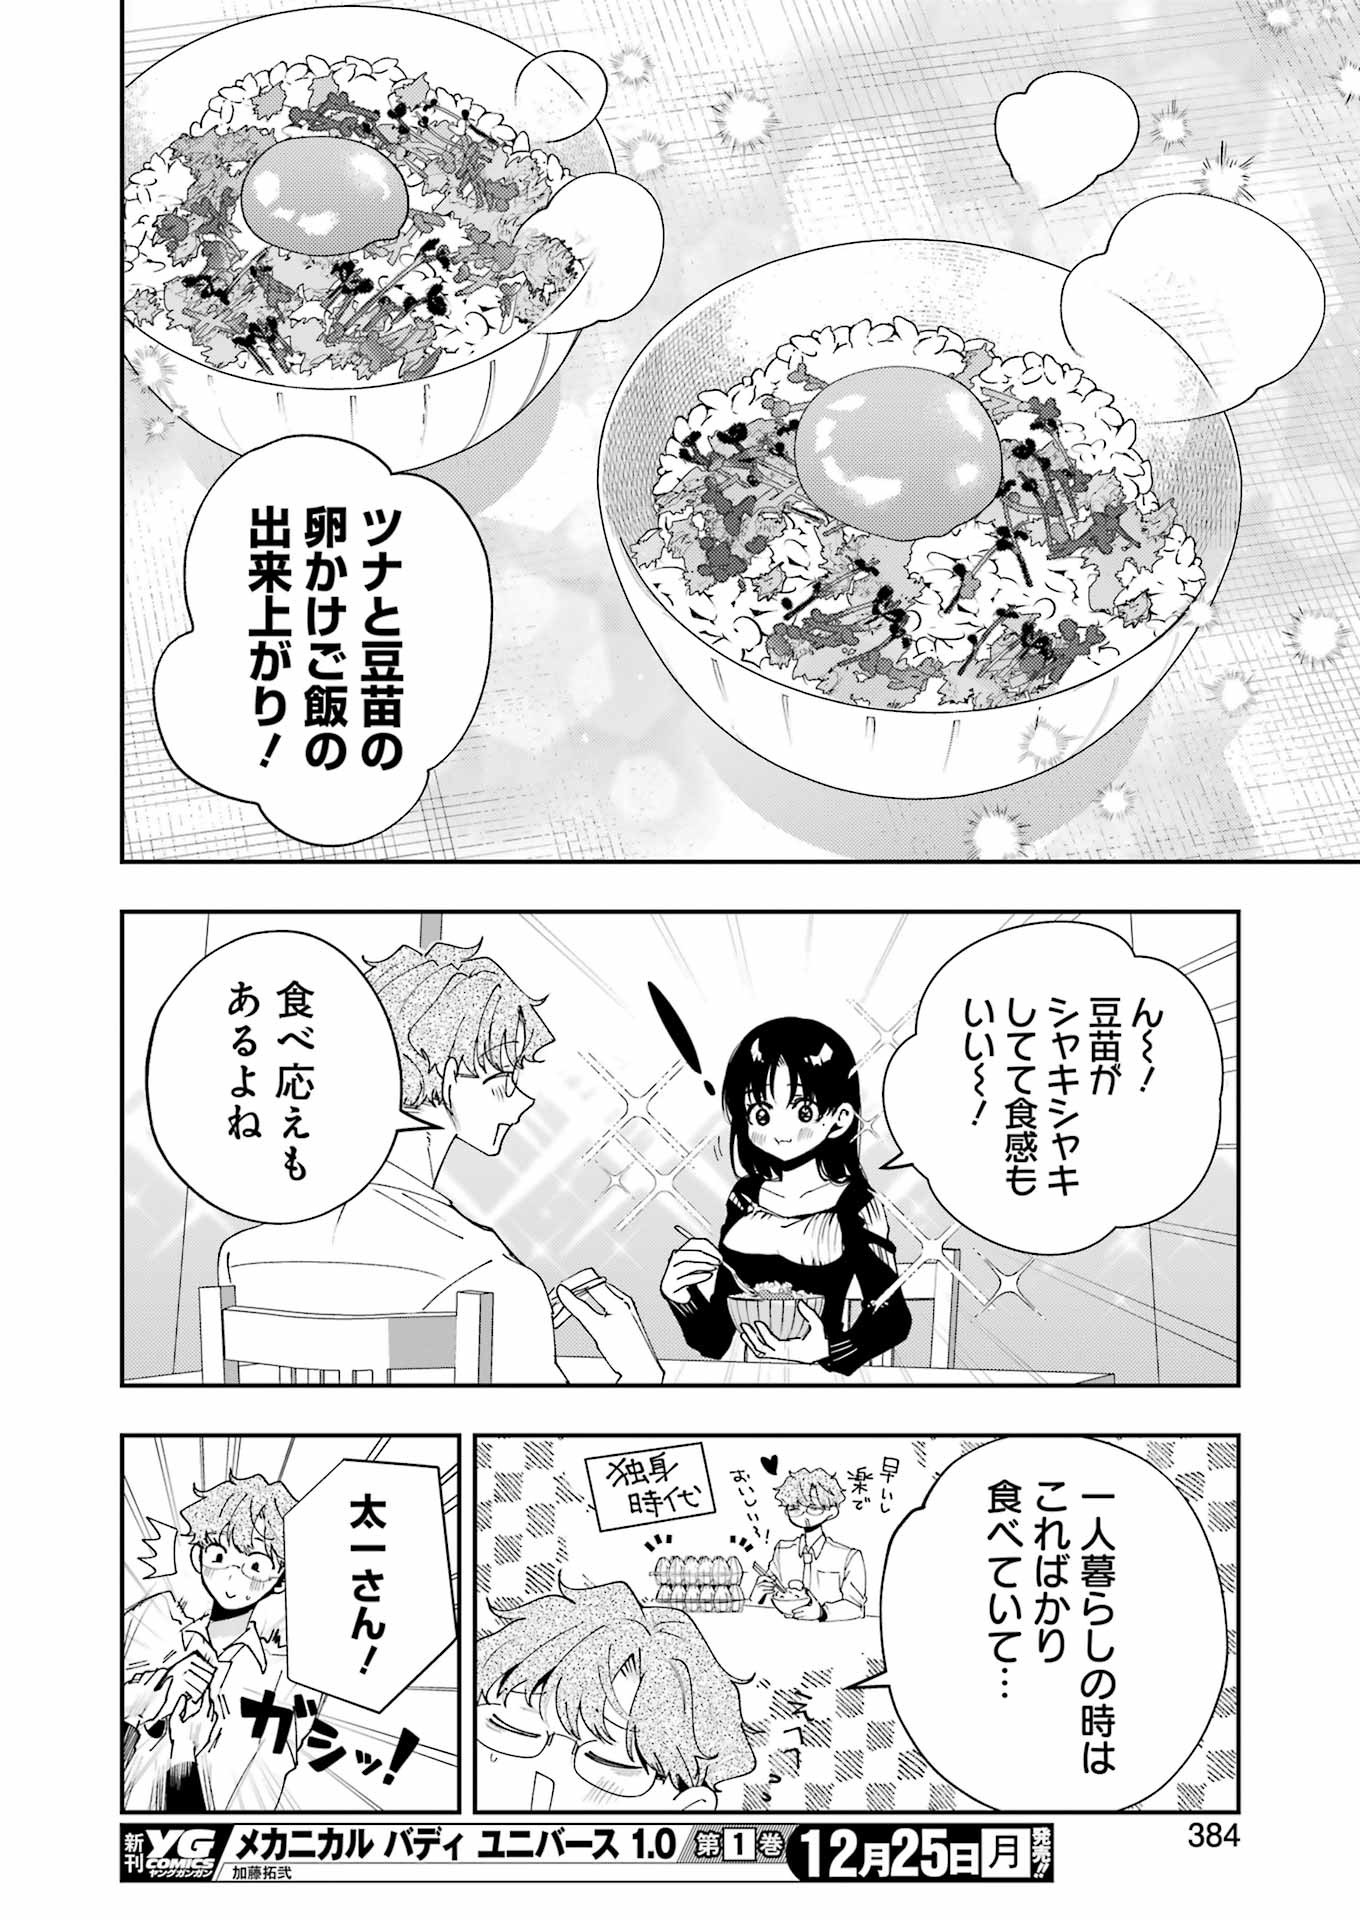 Tsuma wa Boku wo Futorasetai! - Chapter 15 - Page 16